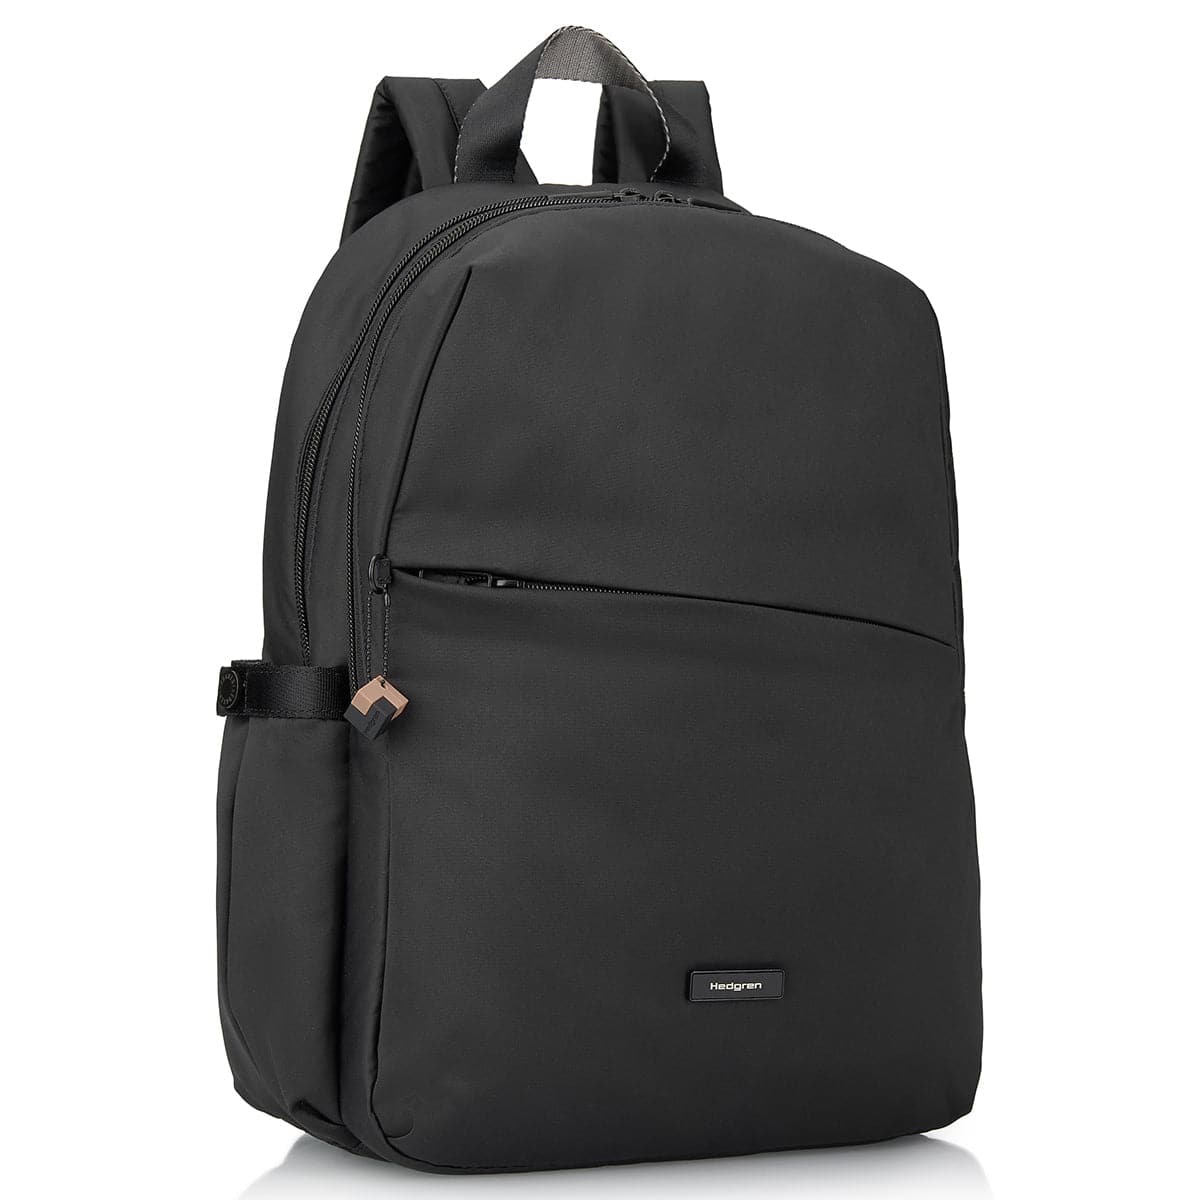 Hedgren Cosmos 13" Laptop Backpack